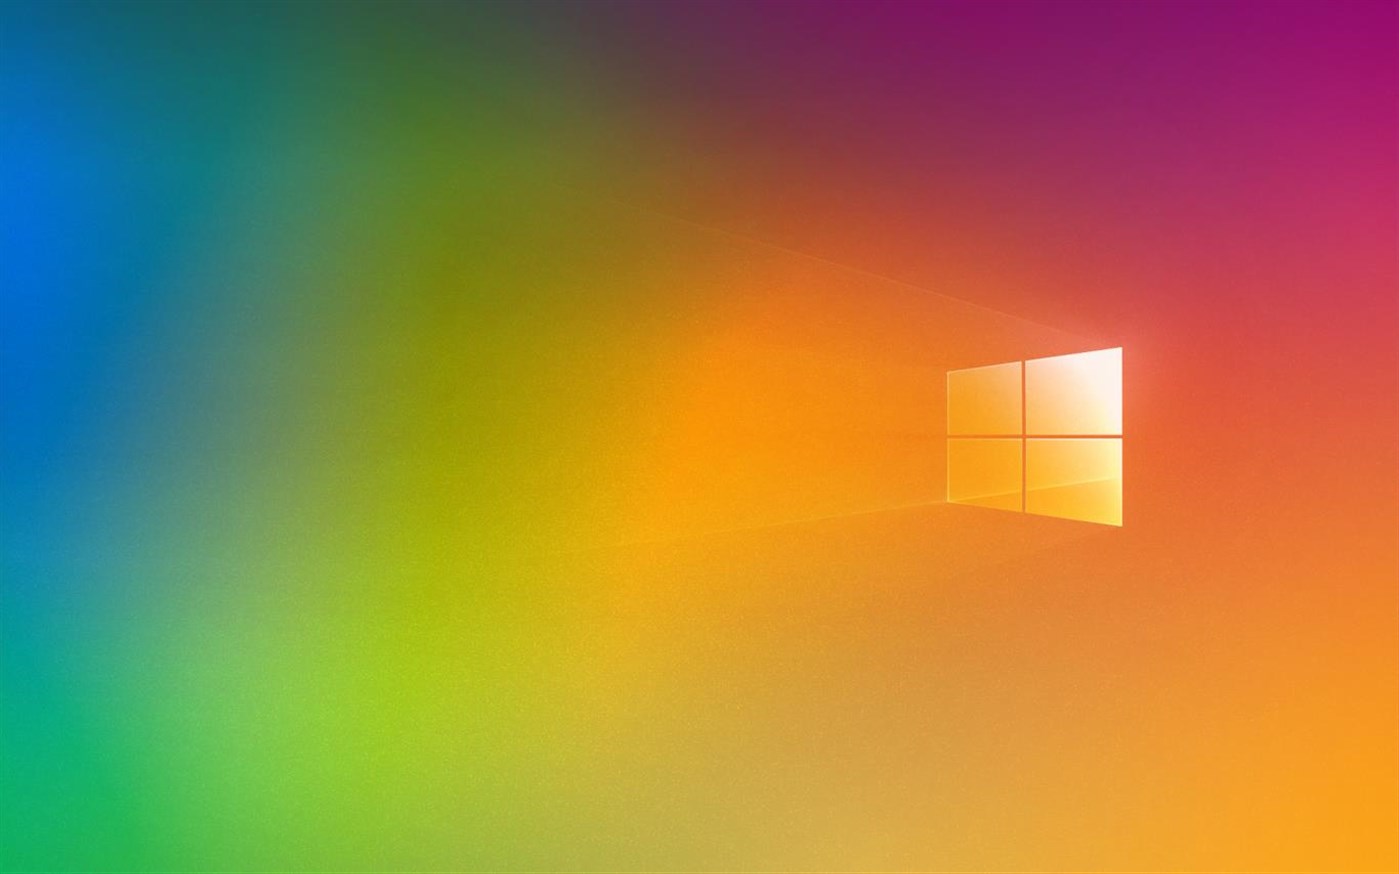 微软发布免费windows 10主题庆祝 骄傲月 活动